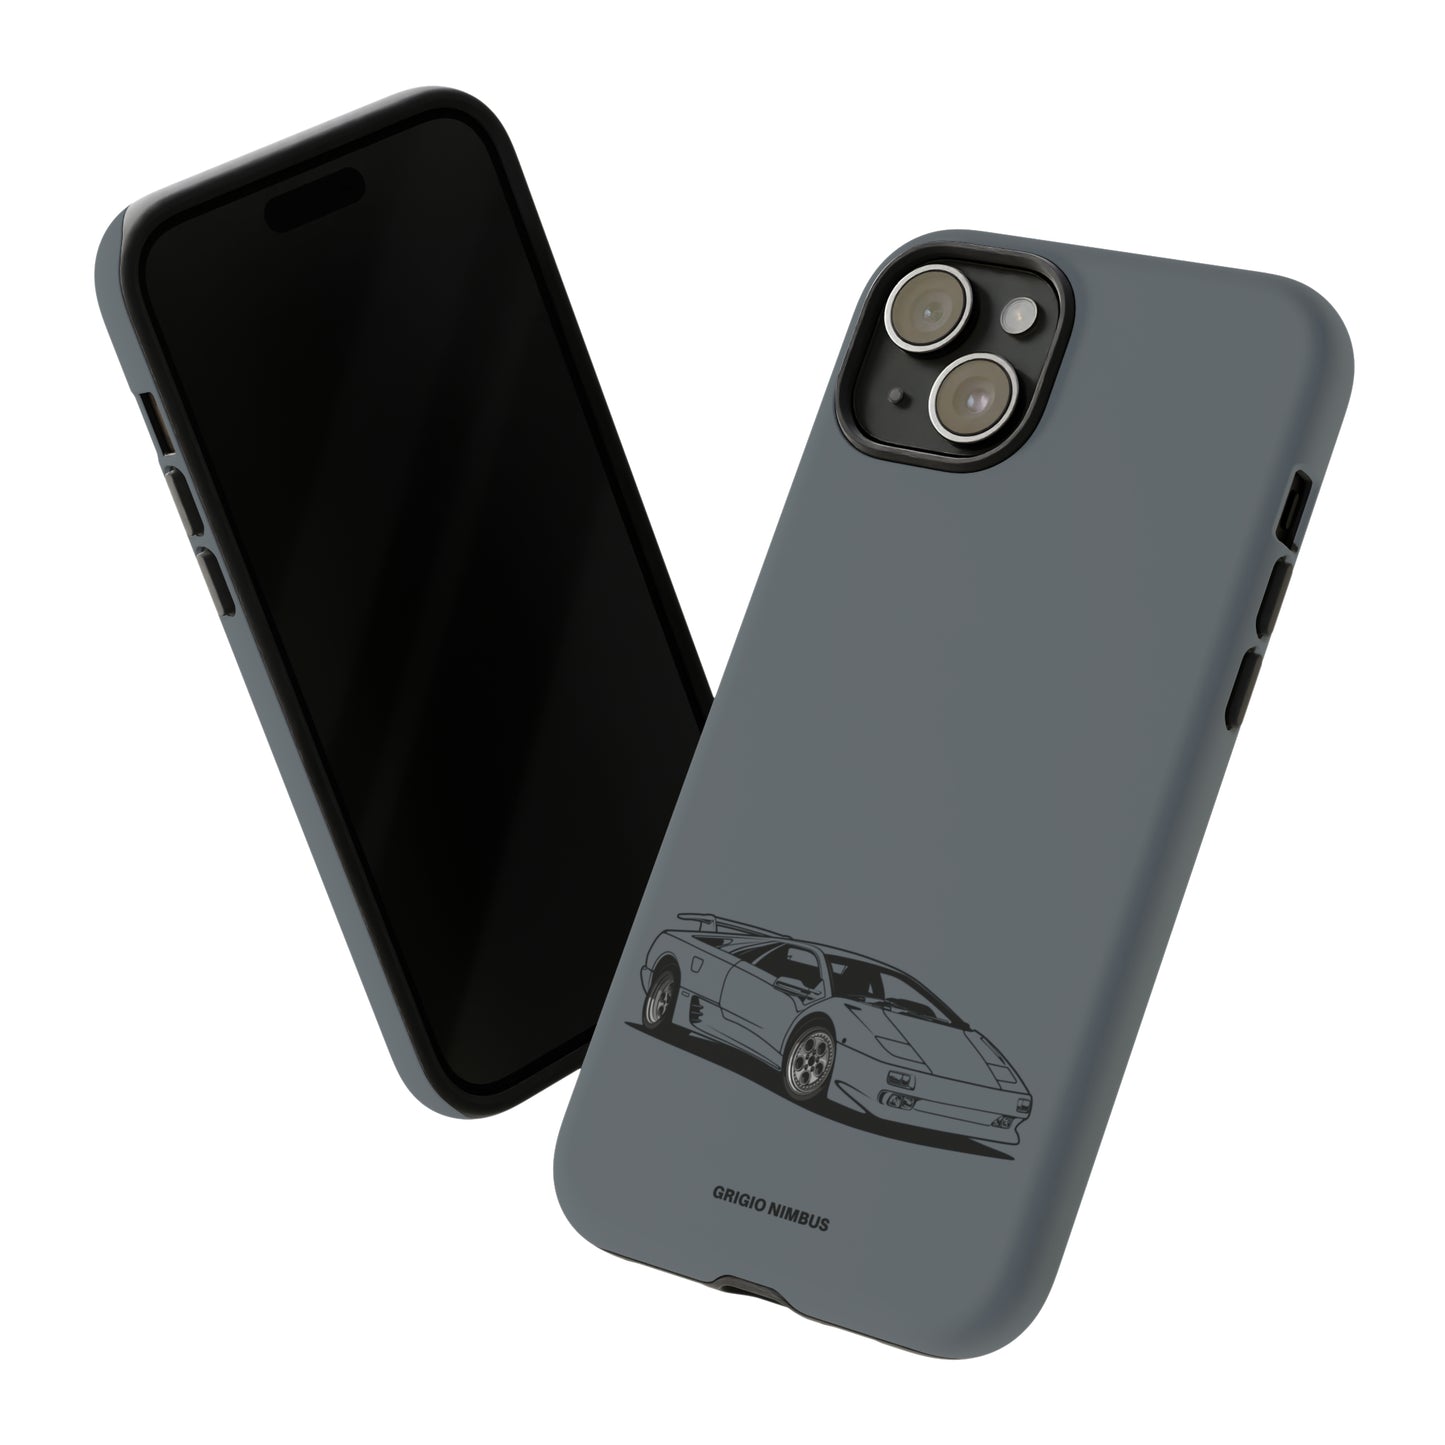 Grigio Nimbus Diablo - Tough Case iPhone/Samsung/Pixel